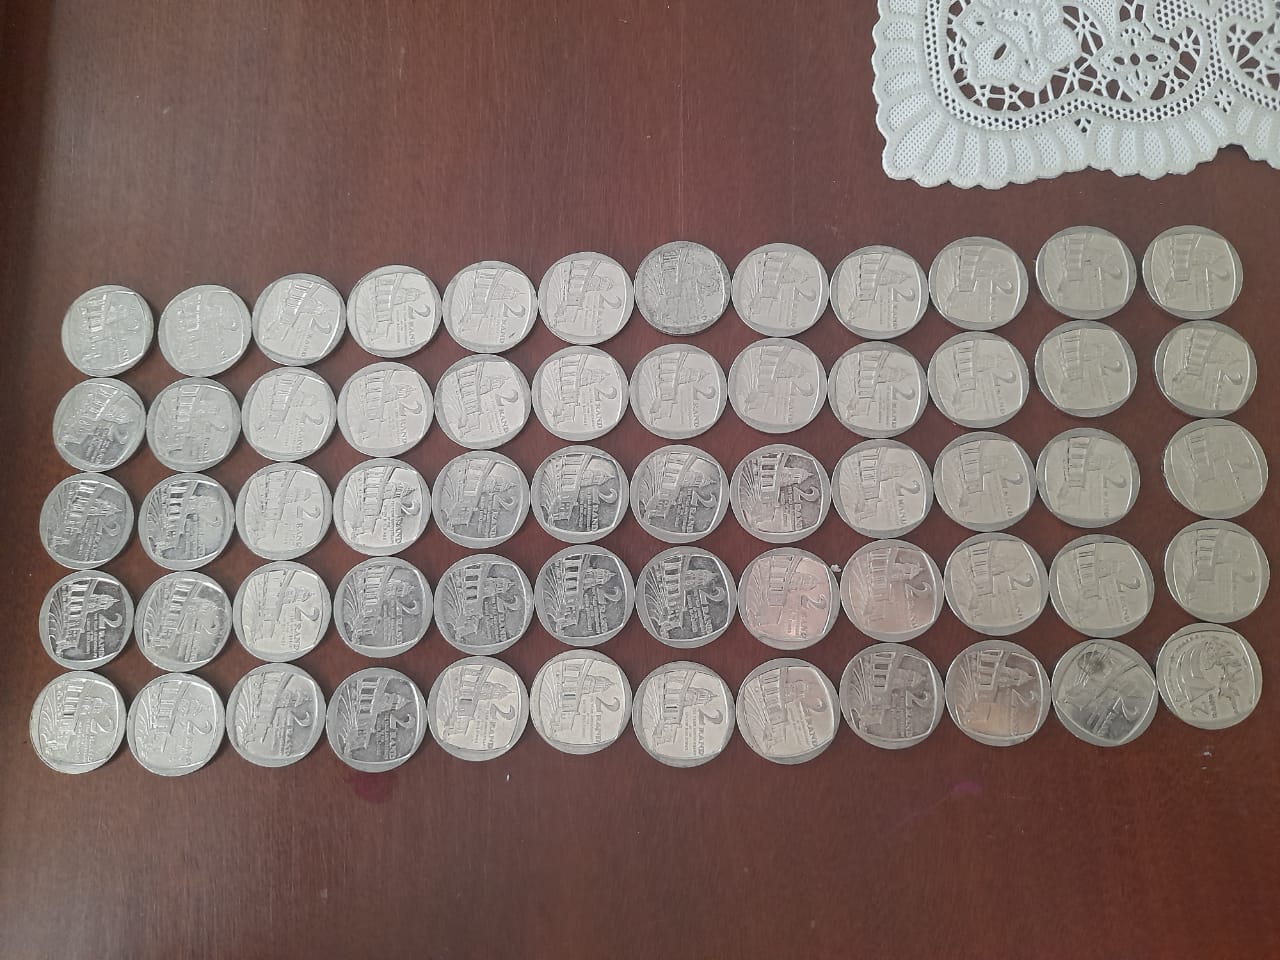 Mandela coins 